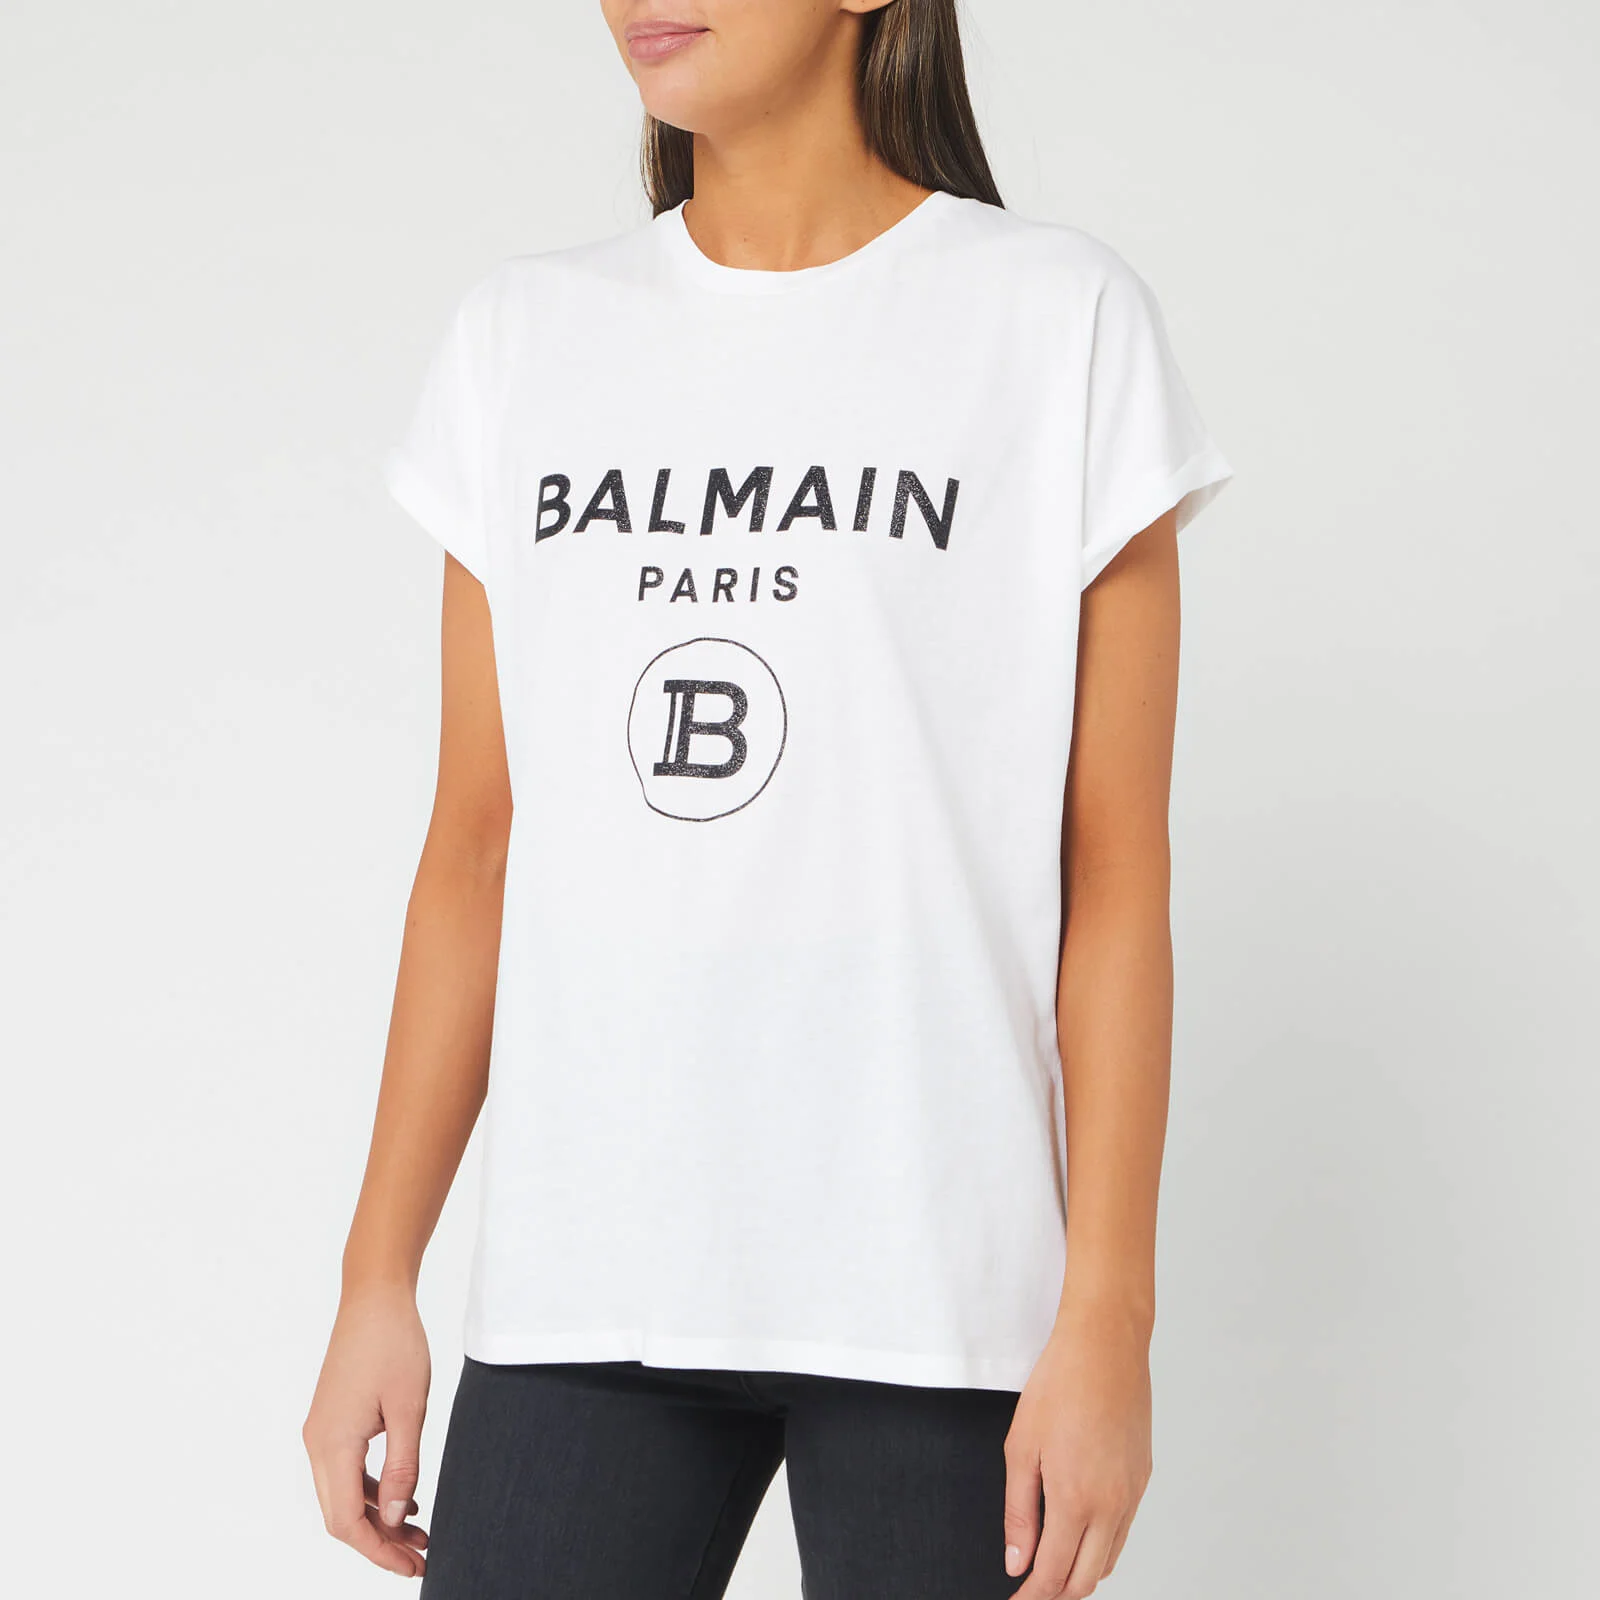 Balmain Women's Short Sleeve Glitter Logo T-Shirt - White Image 1